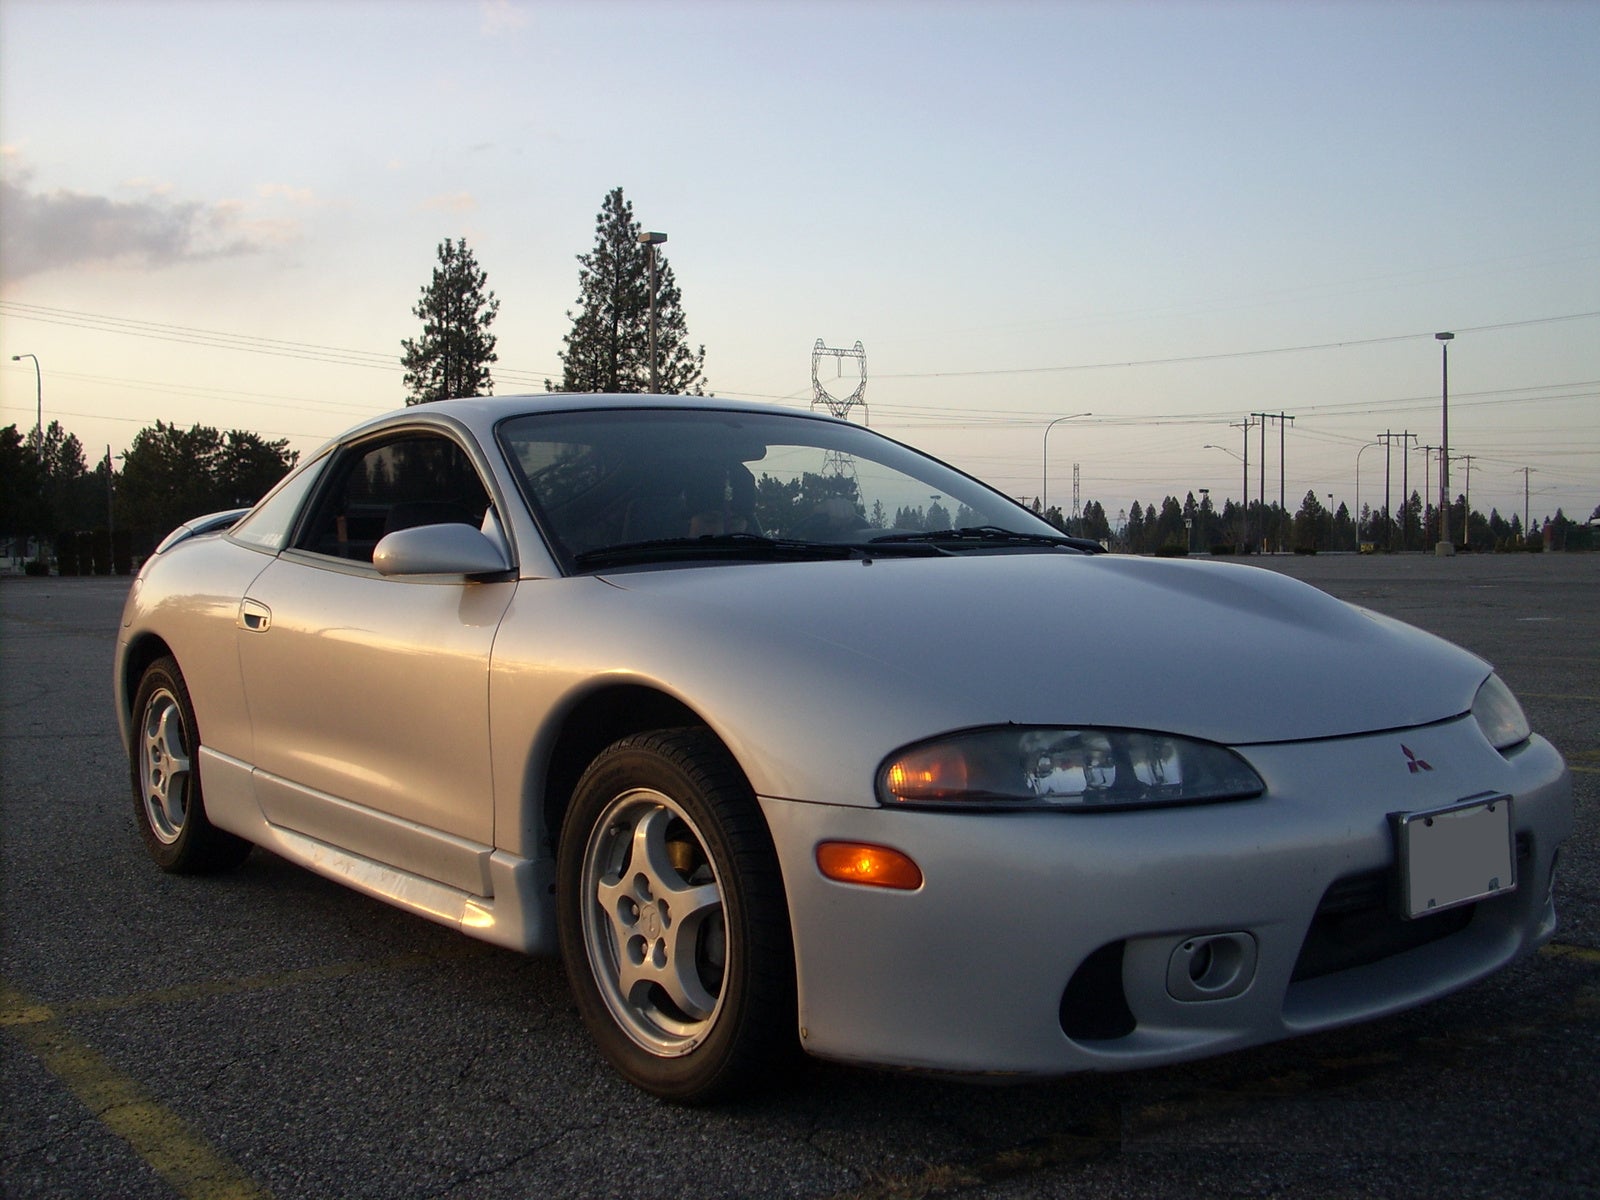 1999 Mitsubishi Eclipse Pictures CarGurus